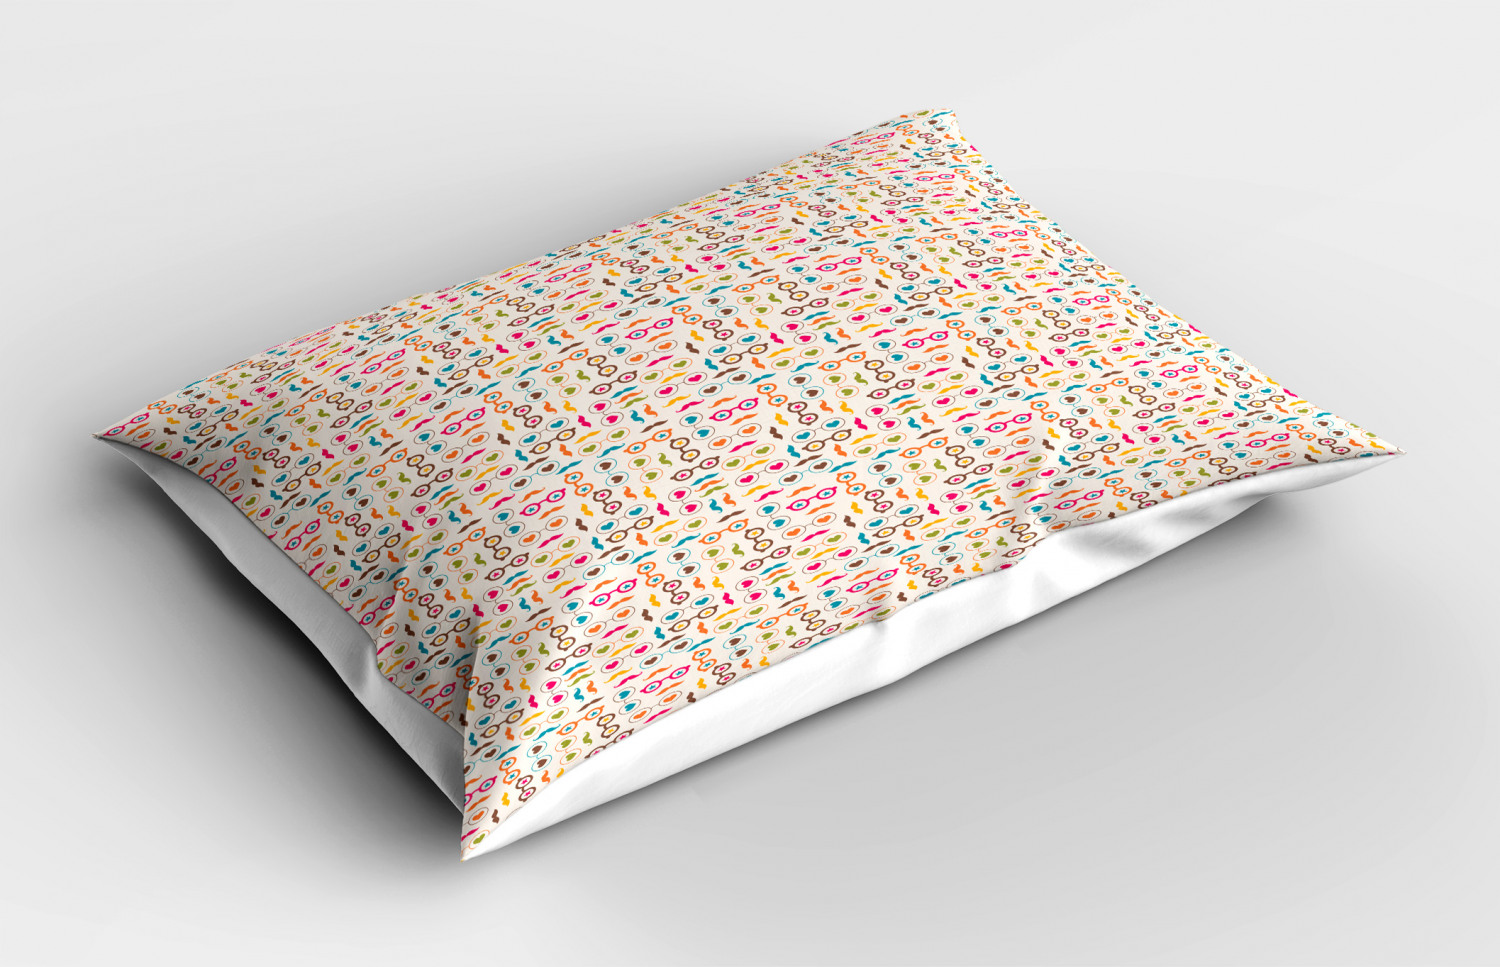 Details about   Colorful Theme Pillow Sham Decorative Pillowcase 3 Sizes Bedroom Decoration 